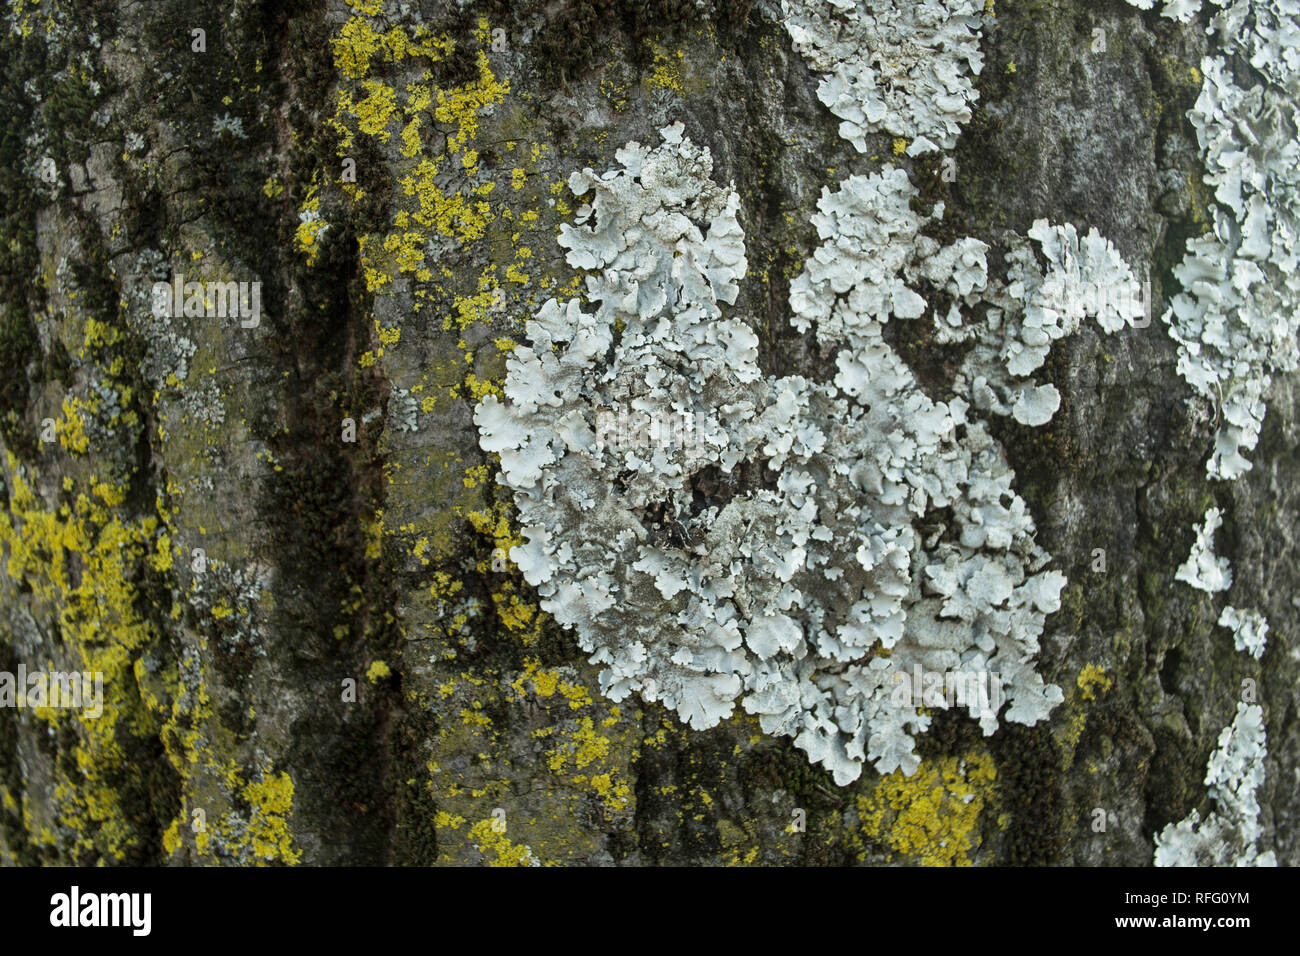 Palmeria sulcata, lichen living on the tree bark. Stock Photo